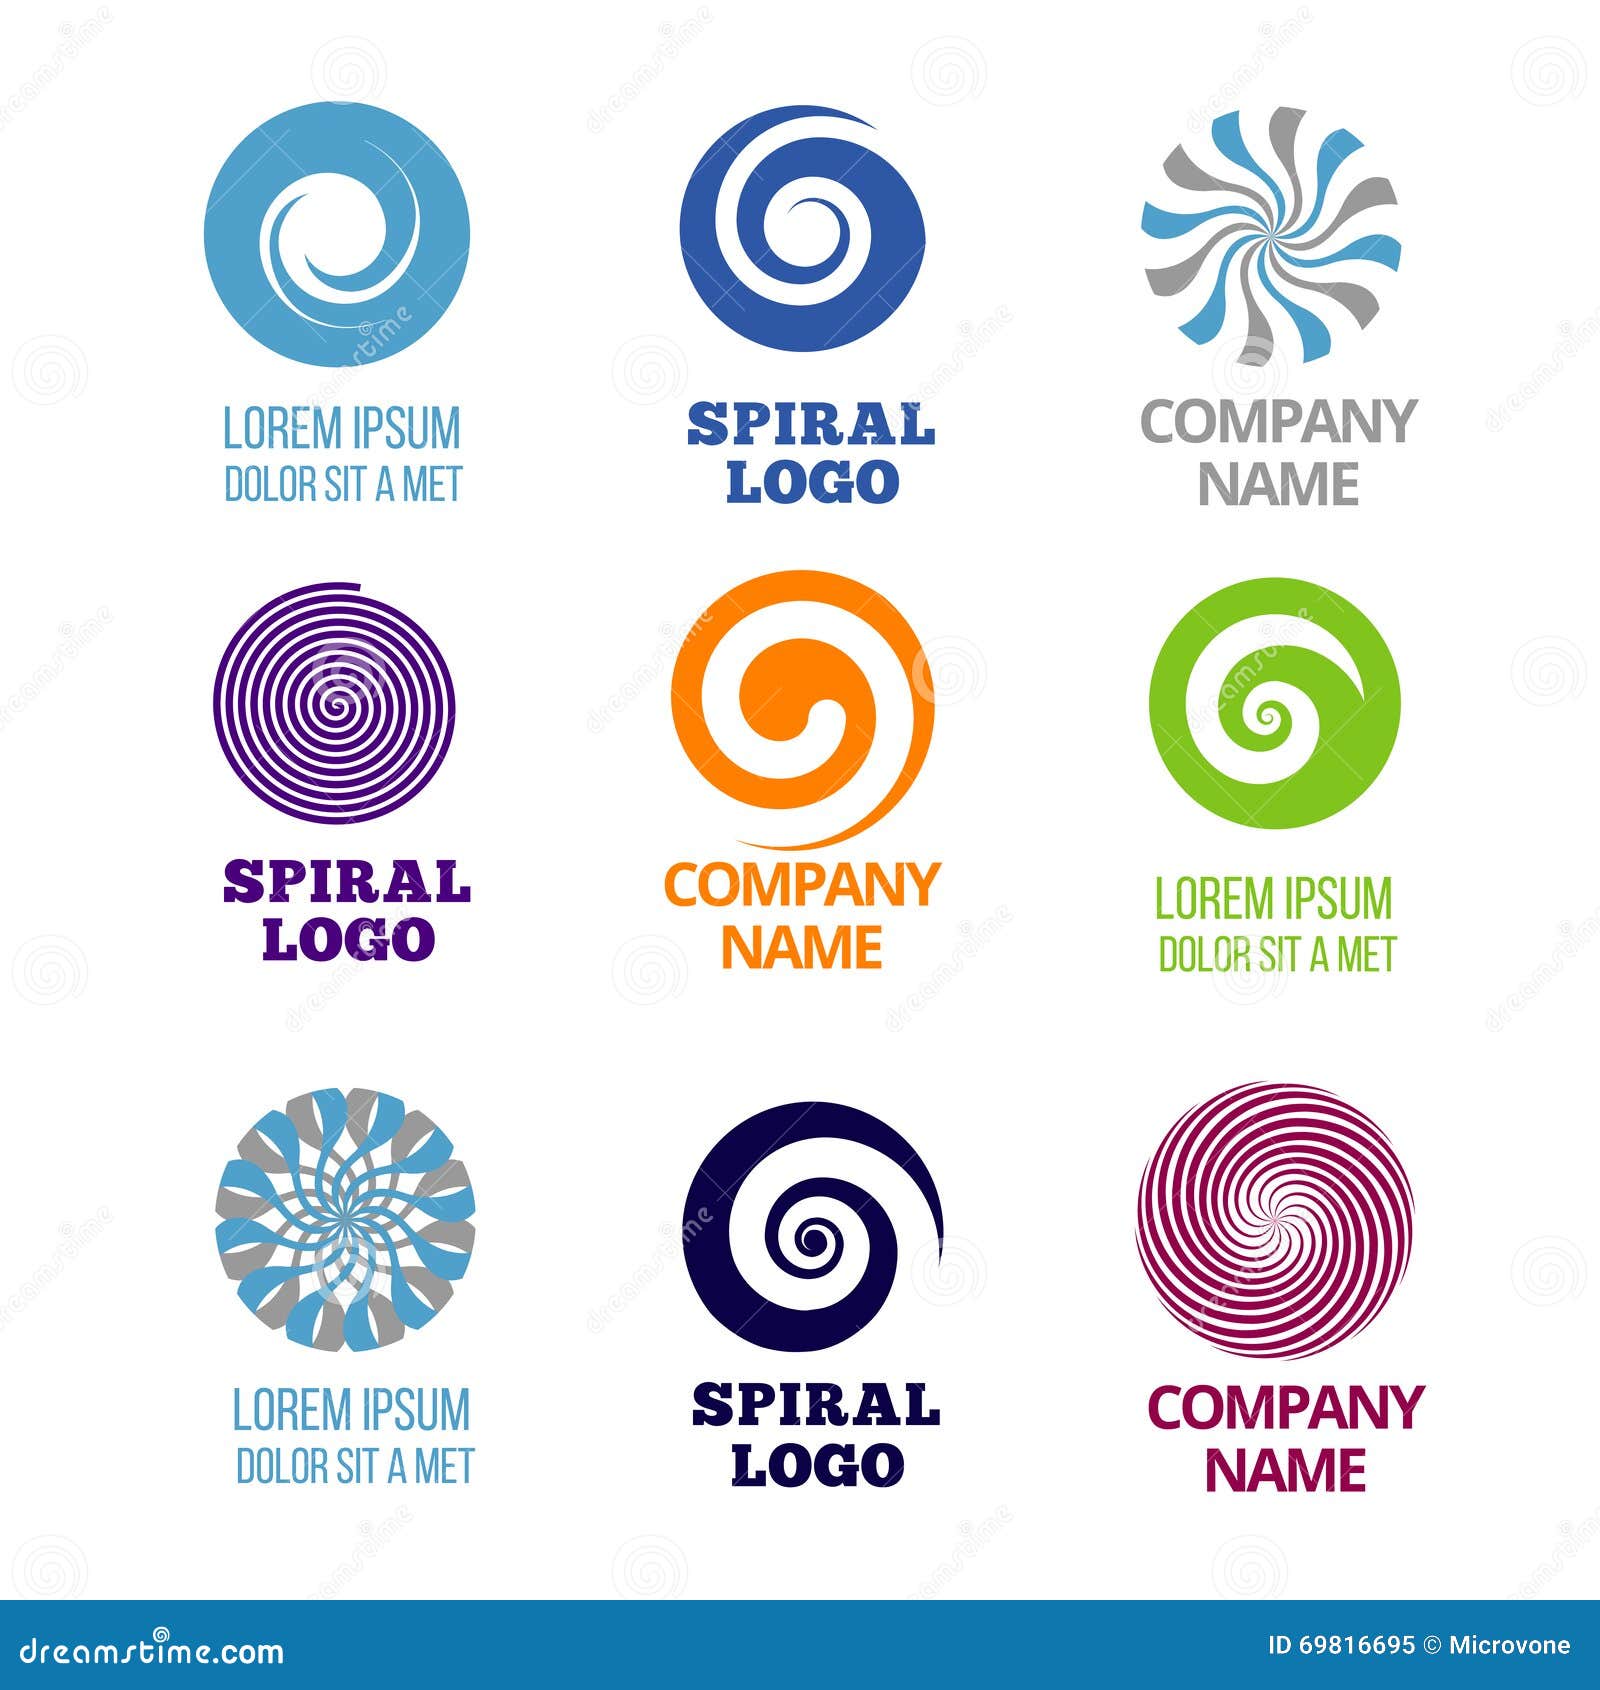 spiral and swirl logos  set